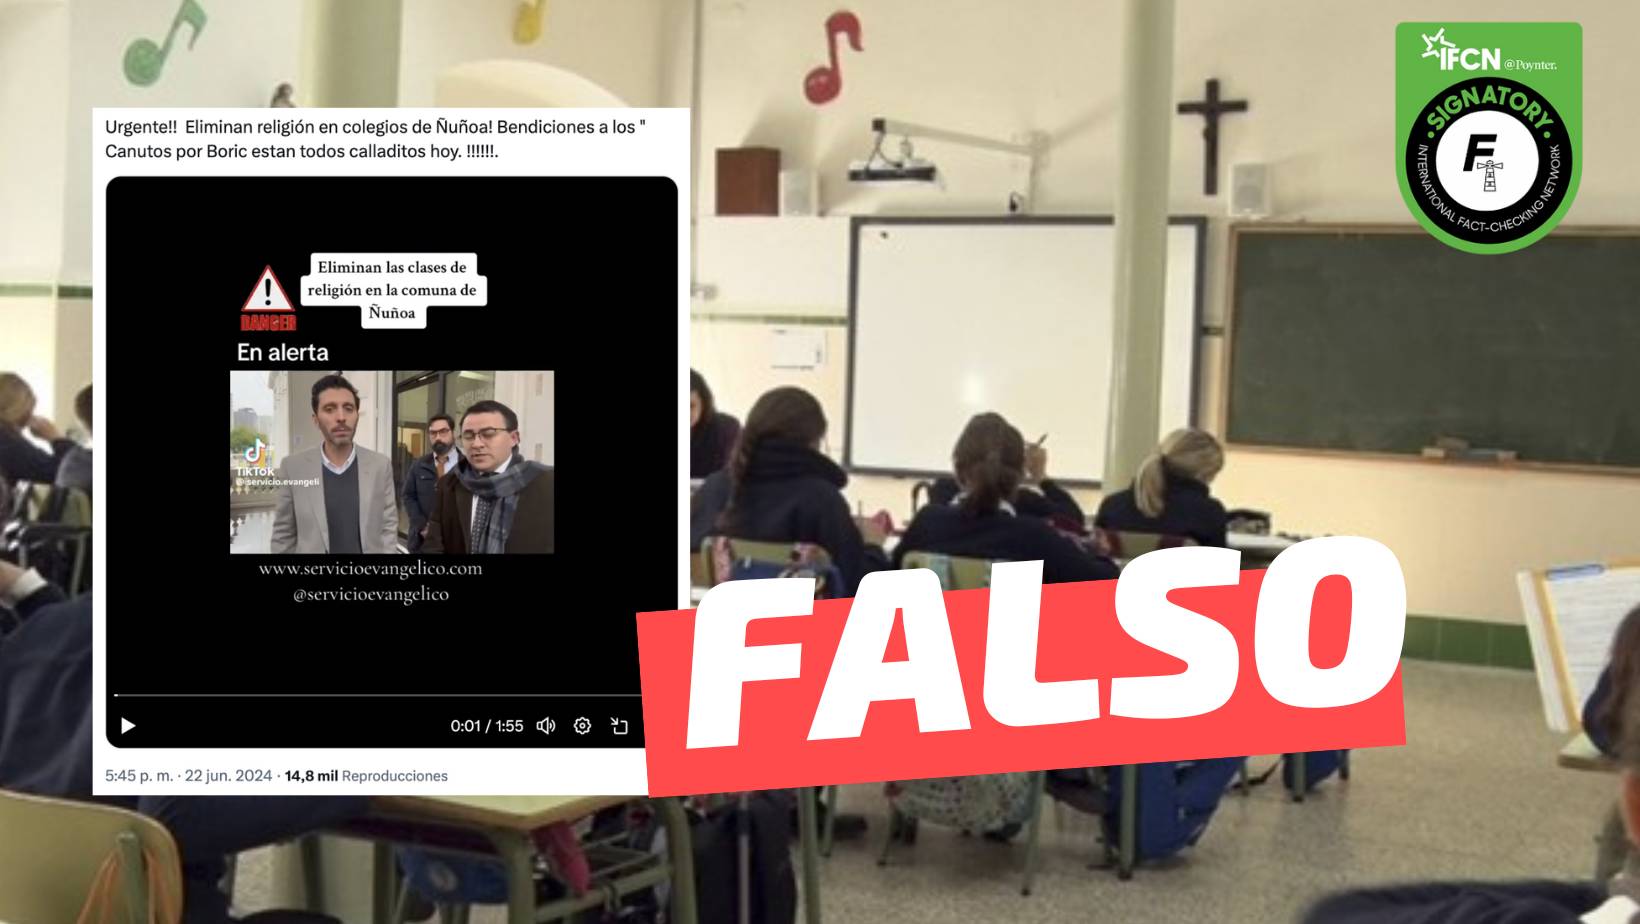 “Eliminan las clases de Religión en los colegios de la comuna de Ñuñoa”: #Falso